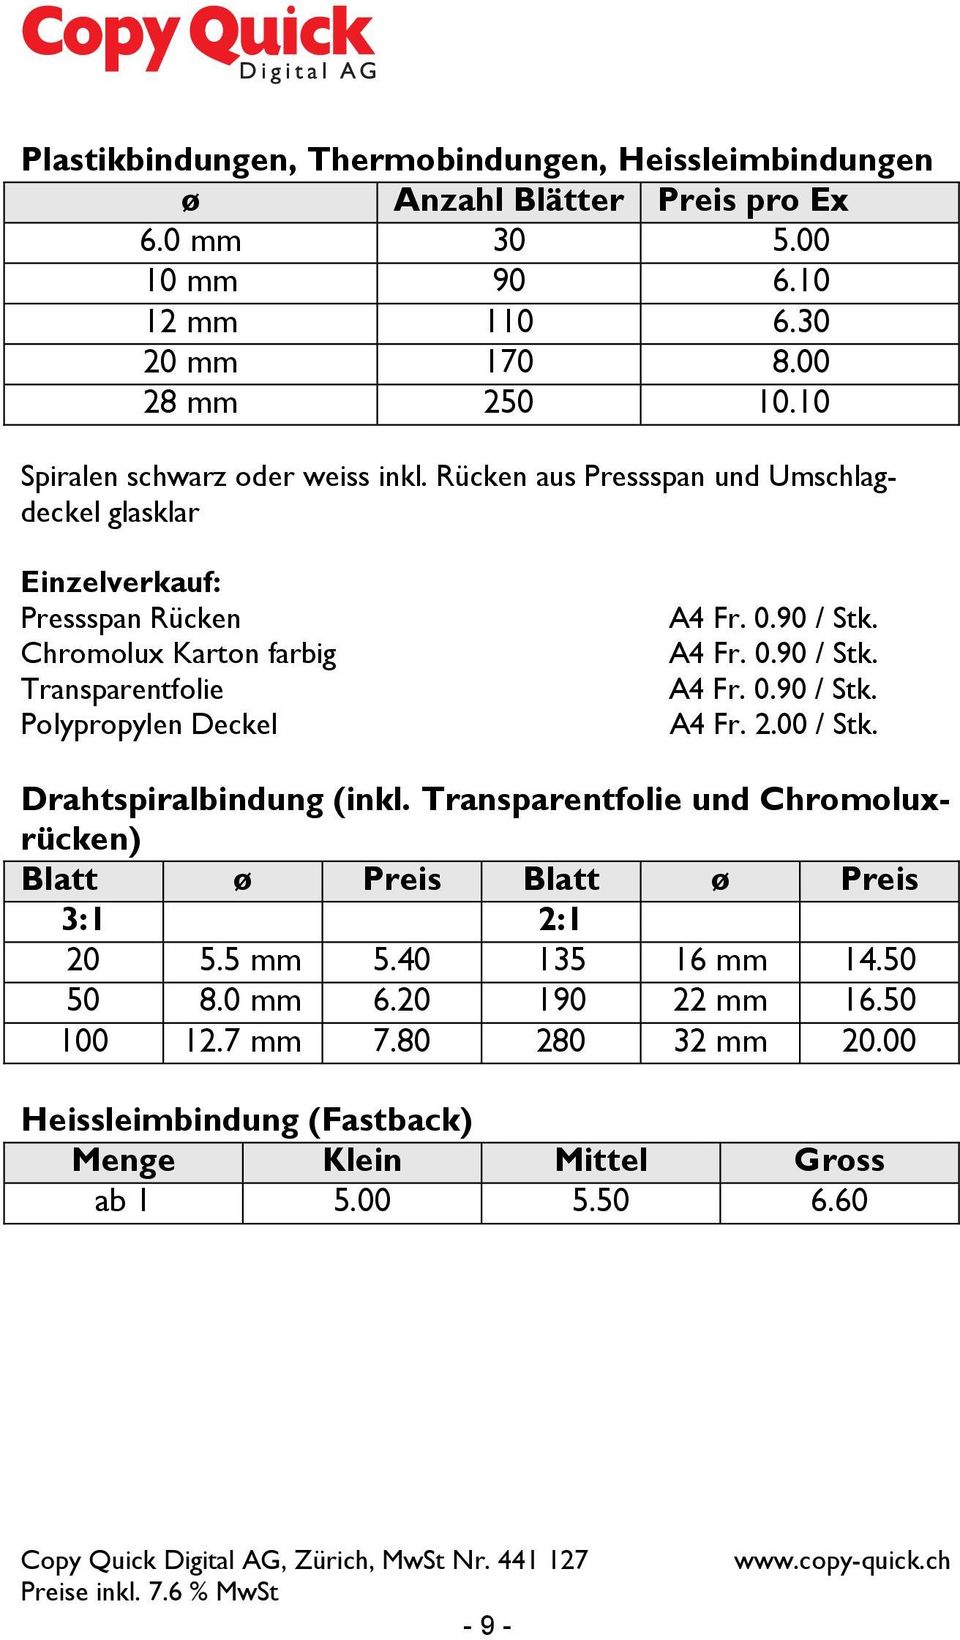 Rücken aus Pressspan und Umschlagdeckel glasklar Einzelverkauf: Pressspan Rücken Chromolux Karton farbig Transparentfolie Polypropylen Deckel A4 Fr. 0.90 / Stk. A4 Fr. 0.90 / Stk. A4 Fr. 0.90 / Stk. A4 Fr. 2.